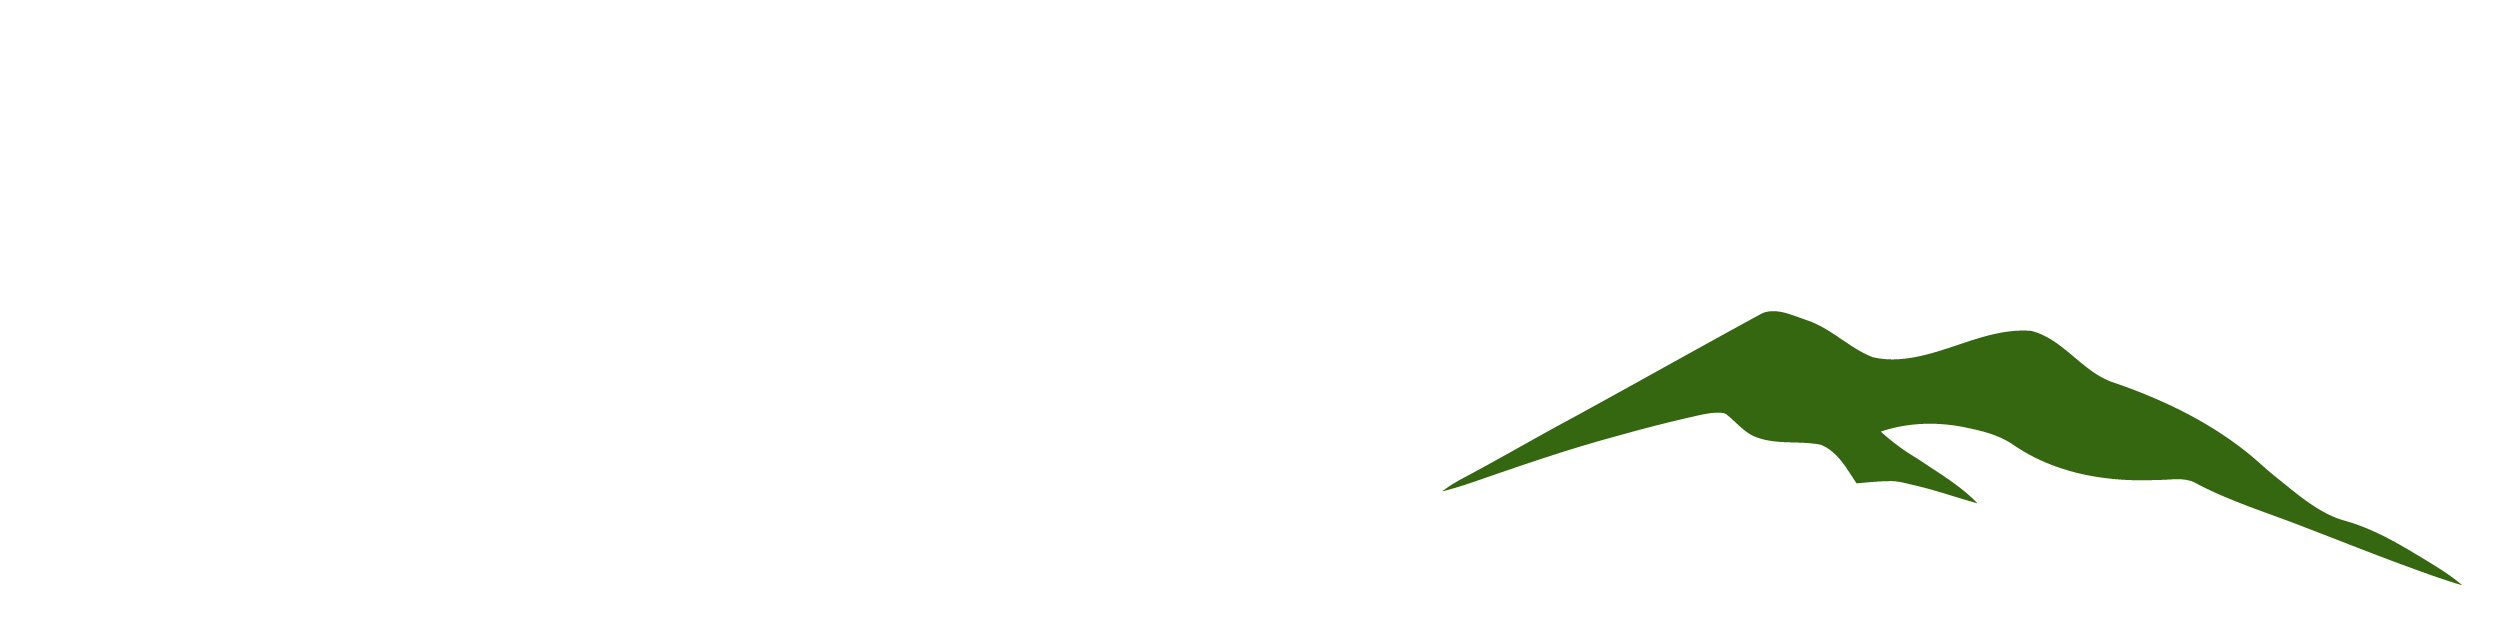 NorTerra Services